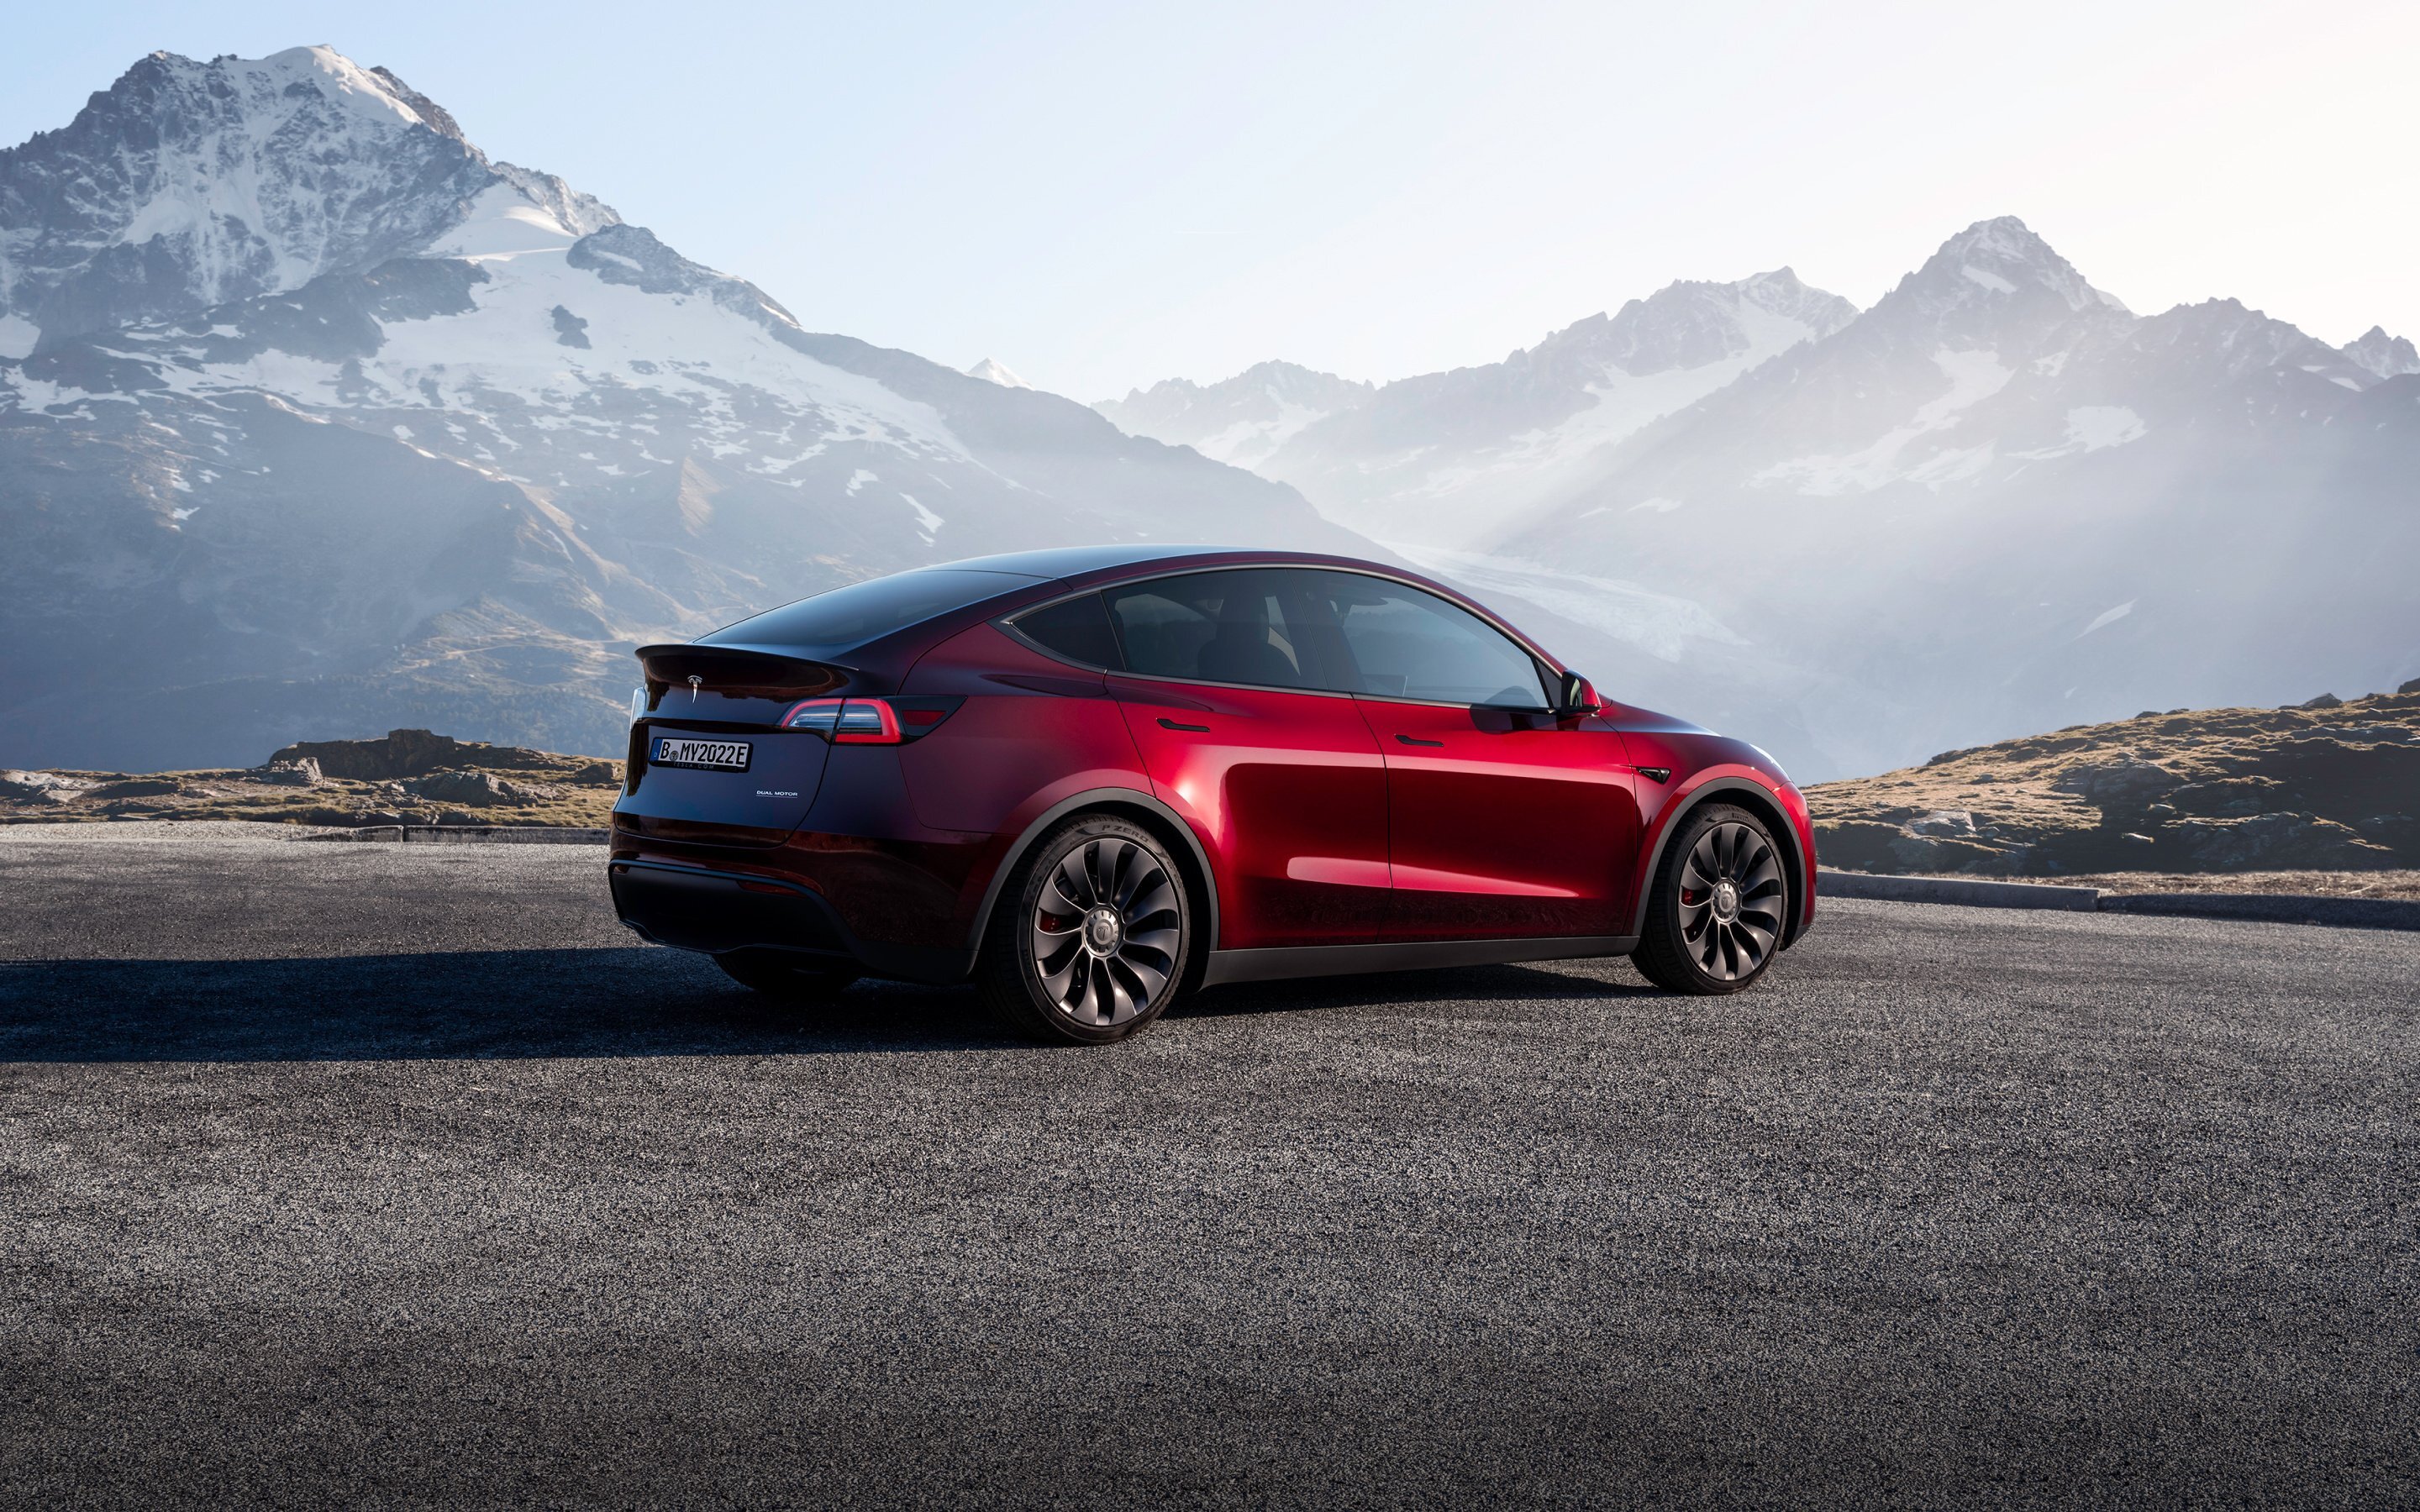 Электромобиль Tesla стал самым продаваемым авто в Европе, обогнав даже бензиновые варианты